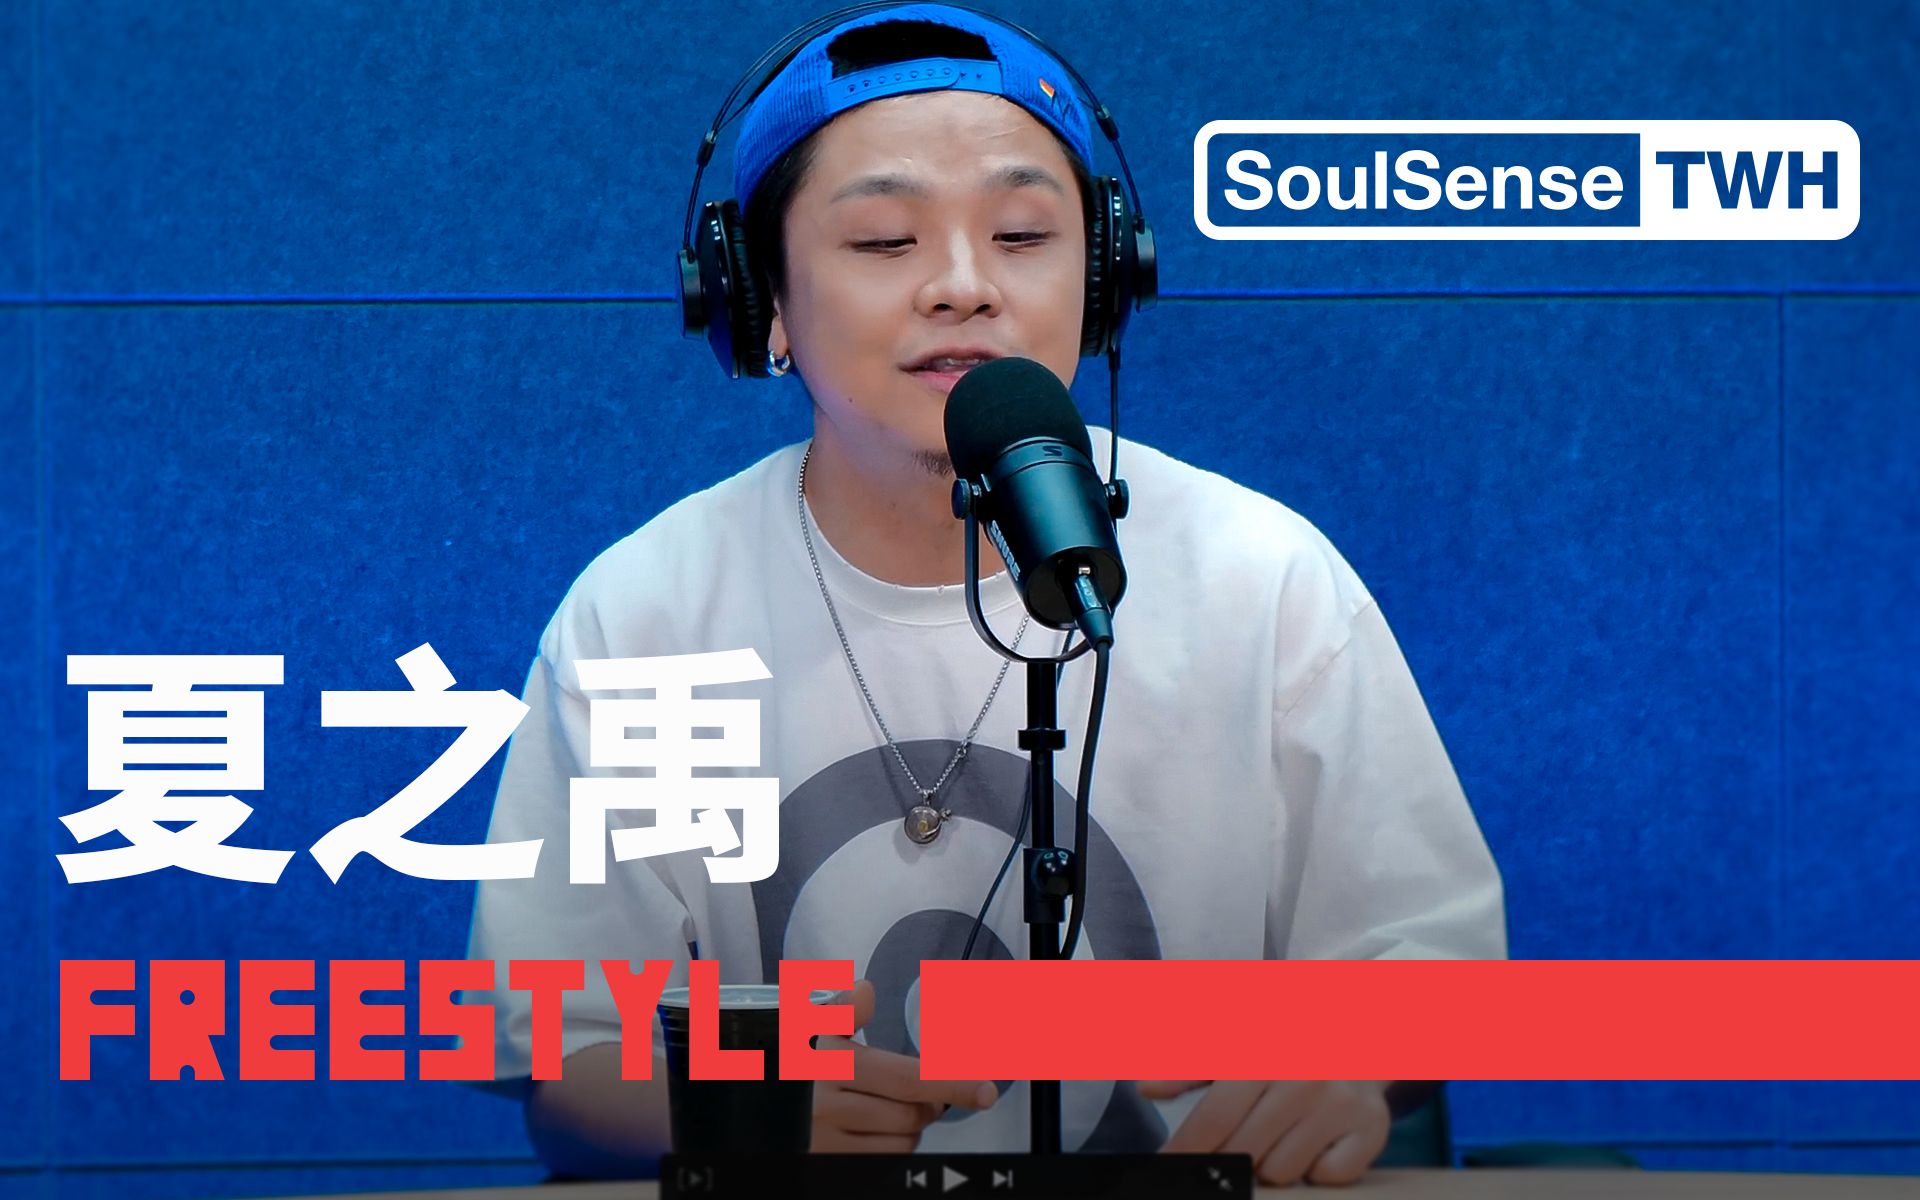 【夏之禹】“我继续 Rap无意间撬动了命运齿轮”现场演绎作品《说唱》| SoulSense TWH Freestyle